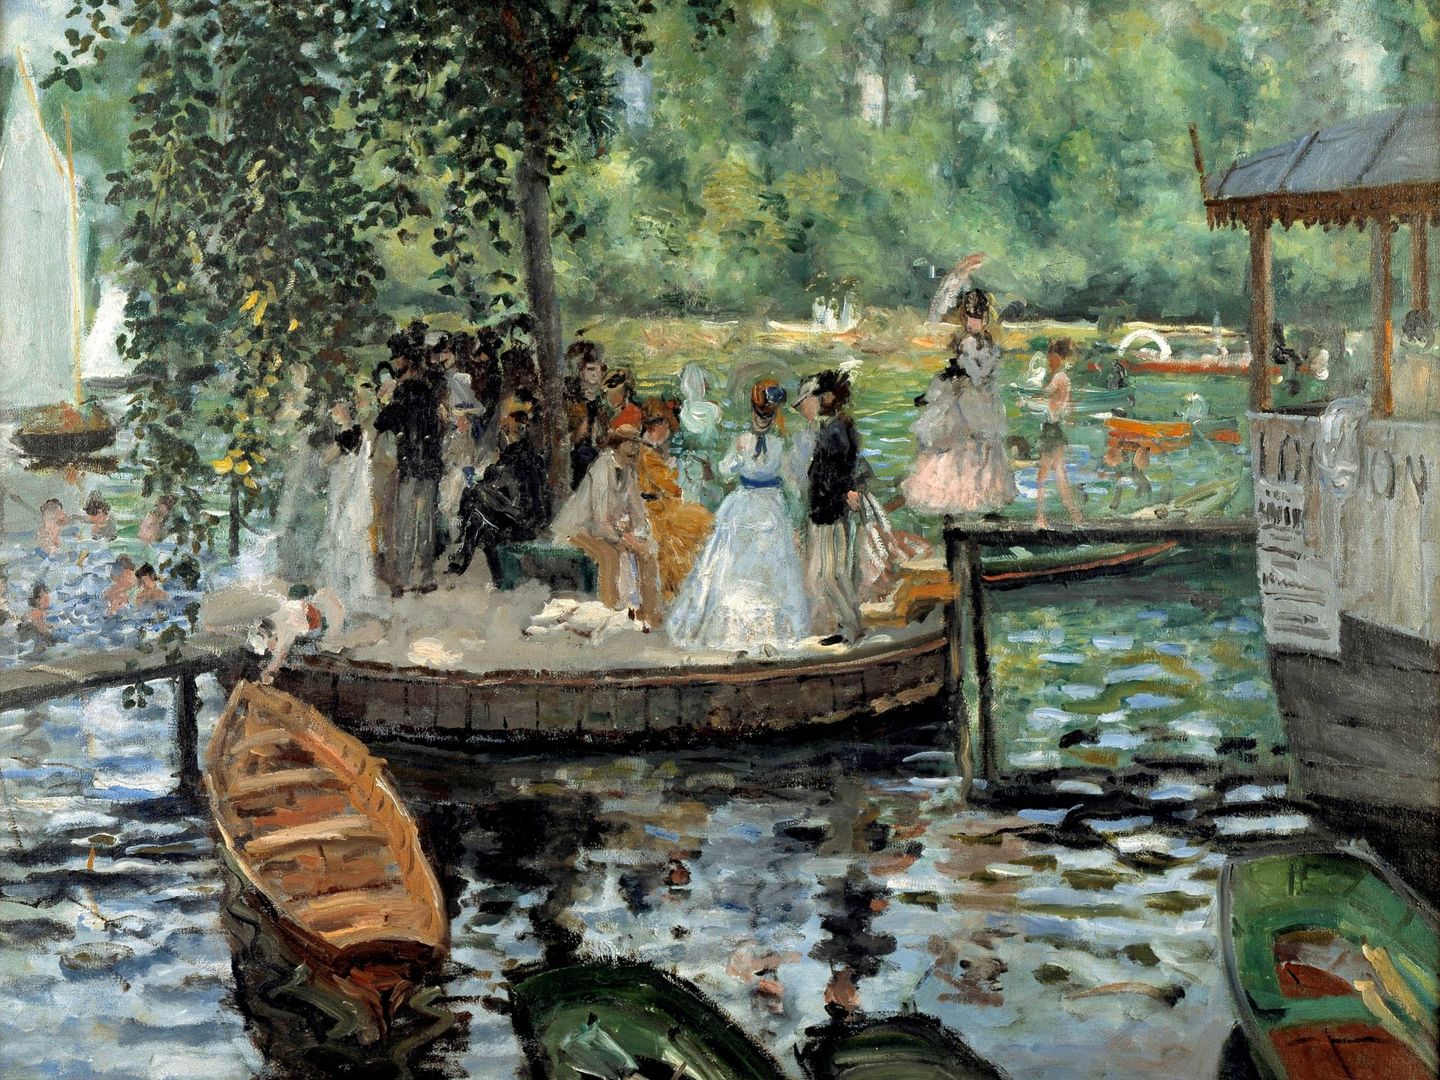 'La Grenouillère', Pierre-Auguste Renoir, 1869. Museo Nacional de Estocolmo.